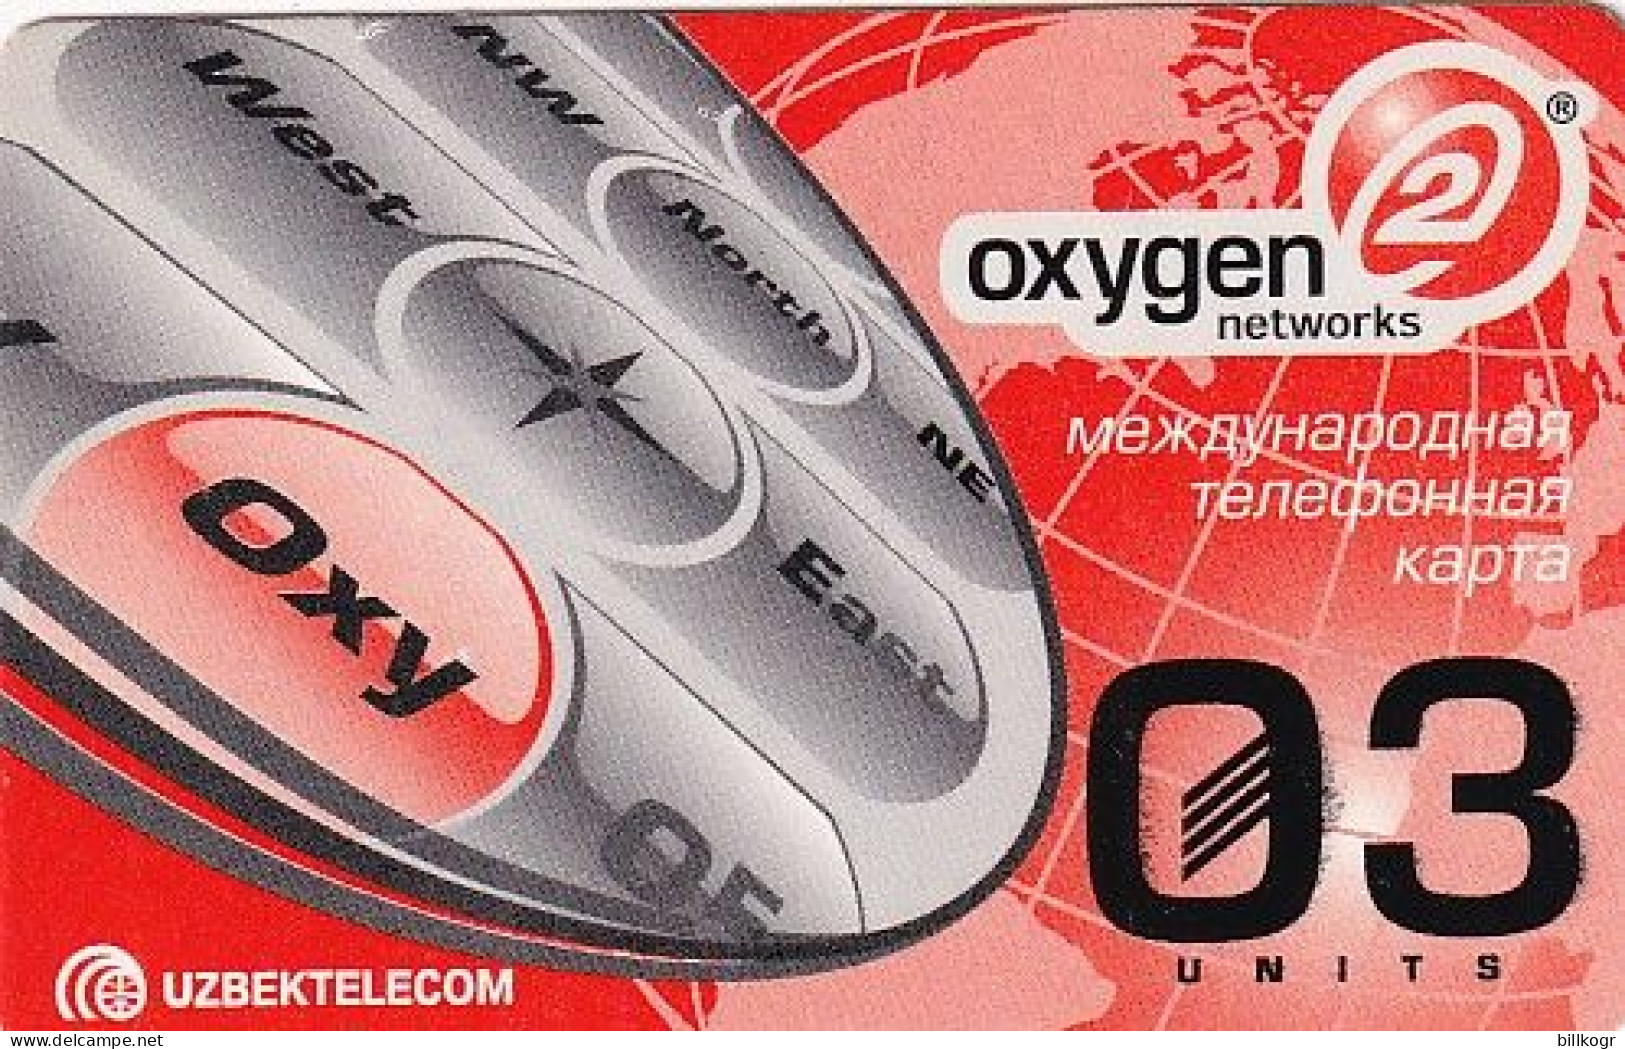 UZBEKISTAN - Oxygen 2 Networks, Uzbek Telecom Prepaid Card 03 Units, Used - Usbekistan